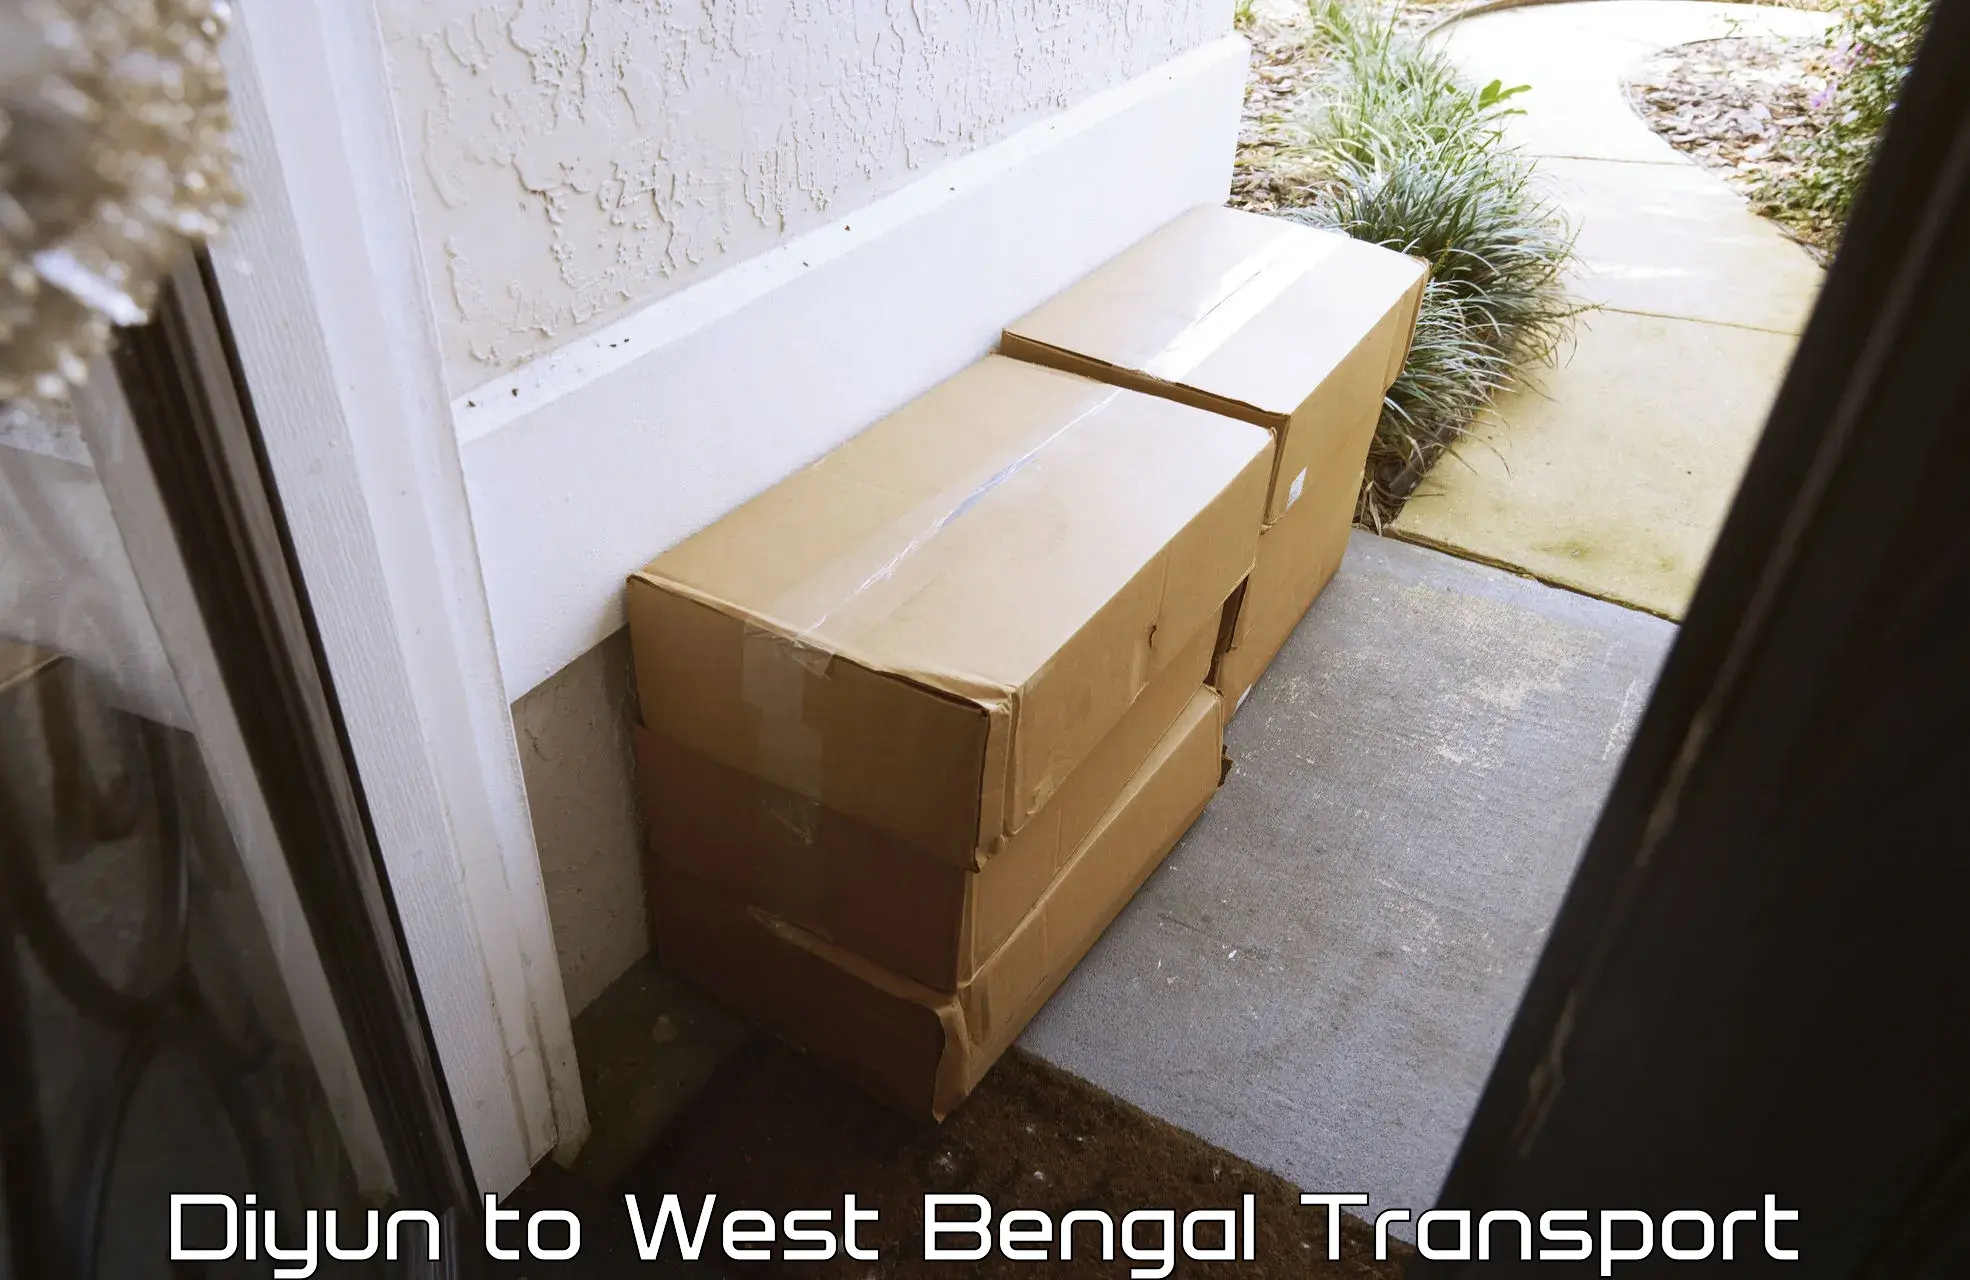 Container transport service Diyun to Palasi